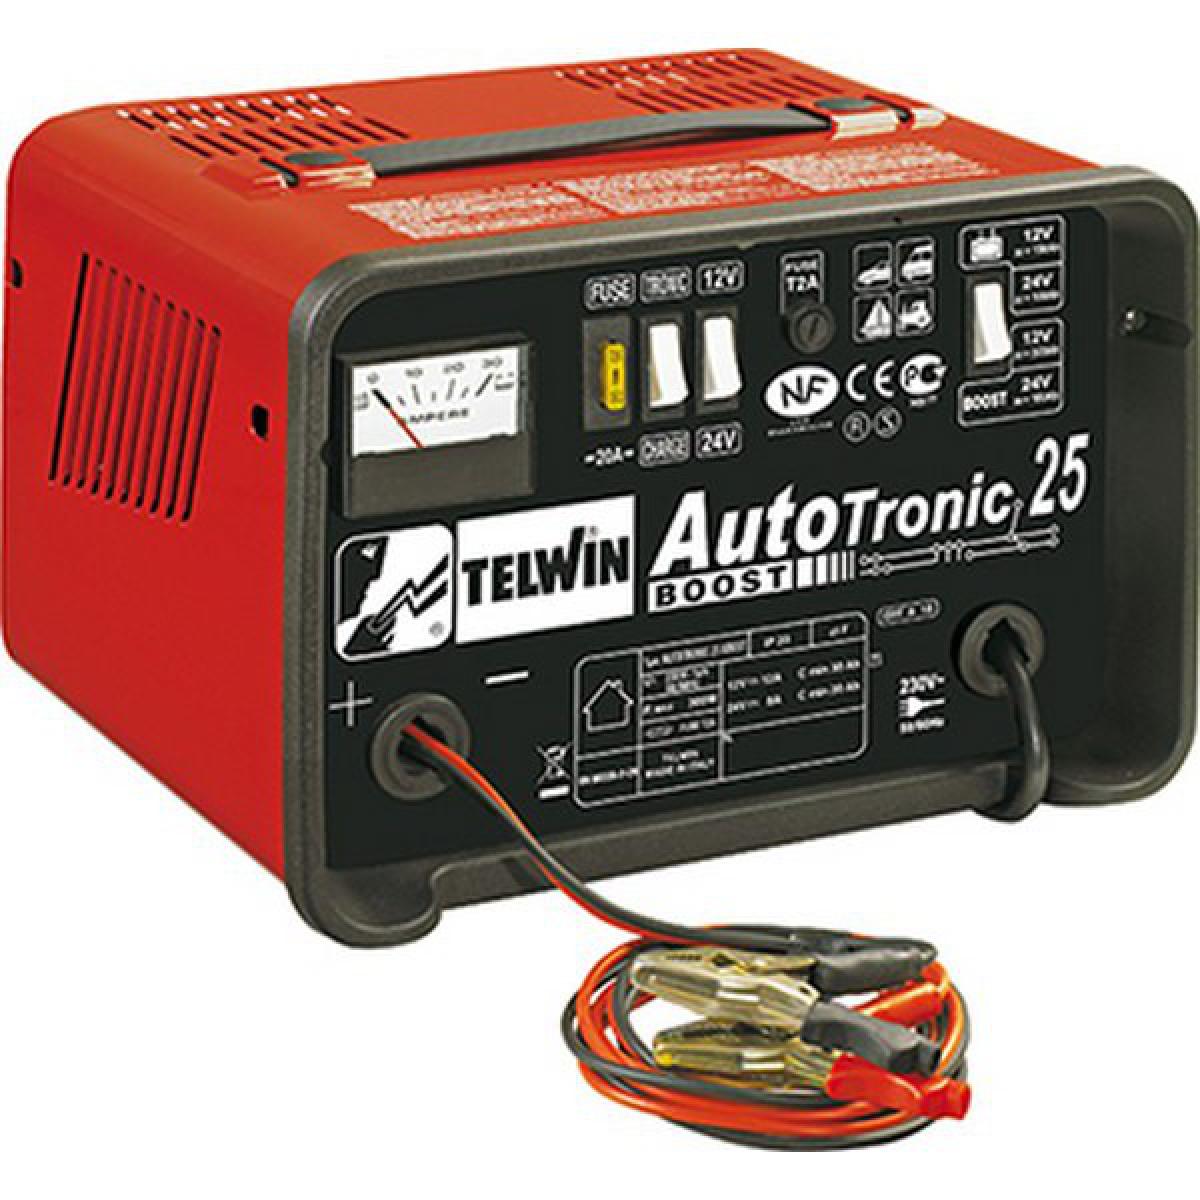 Telwin - Chargeur de batterie AUTOTRONIC 25 BOOST, Tension de secteur : 230 V - Chargeurs de piles